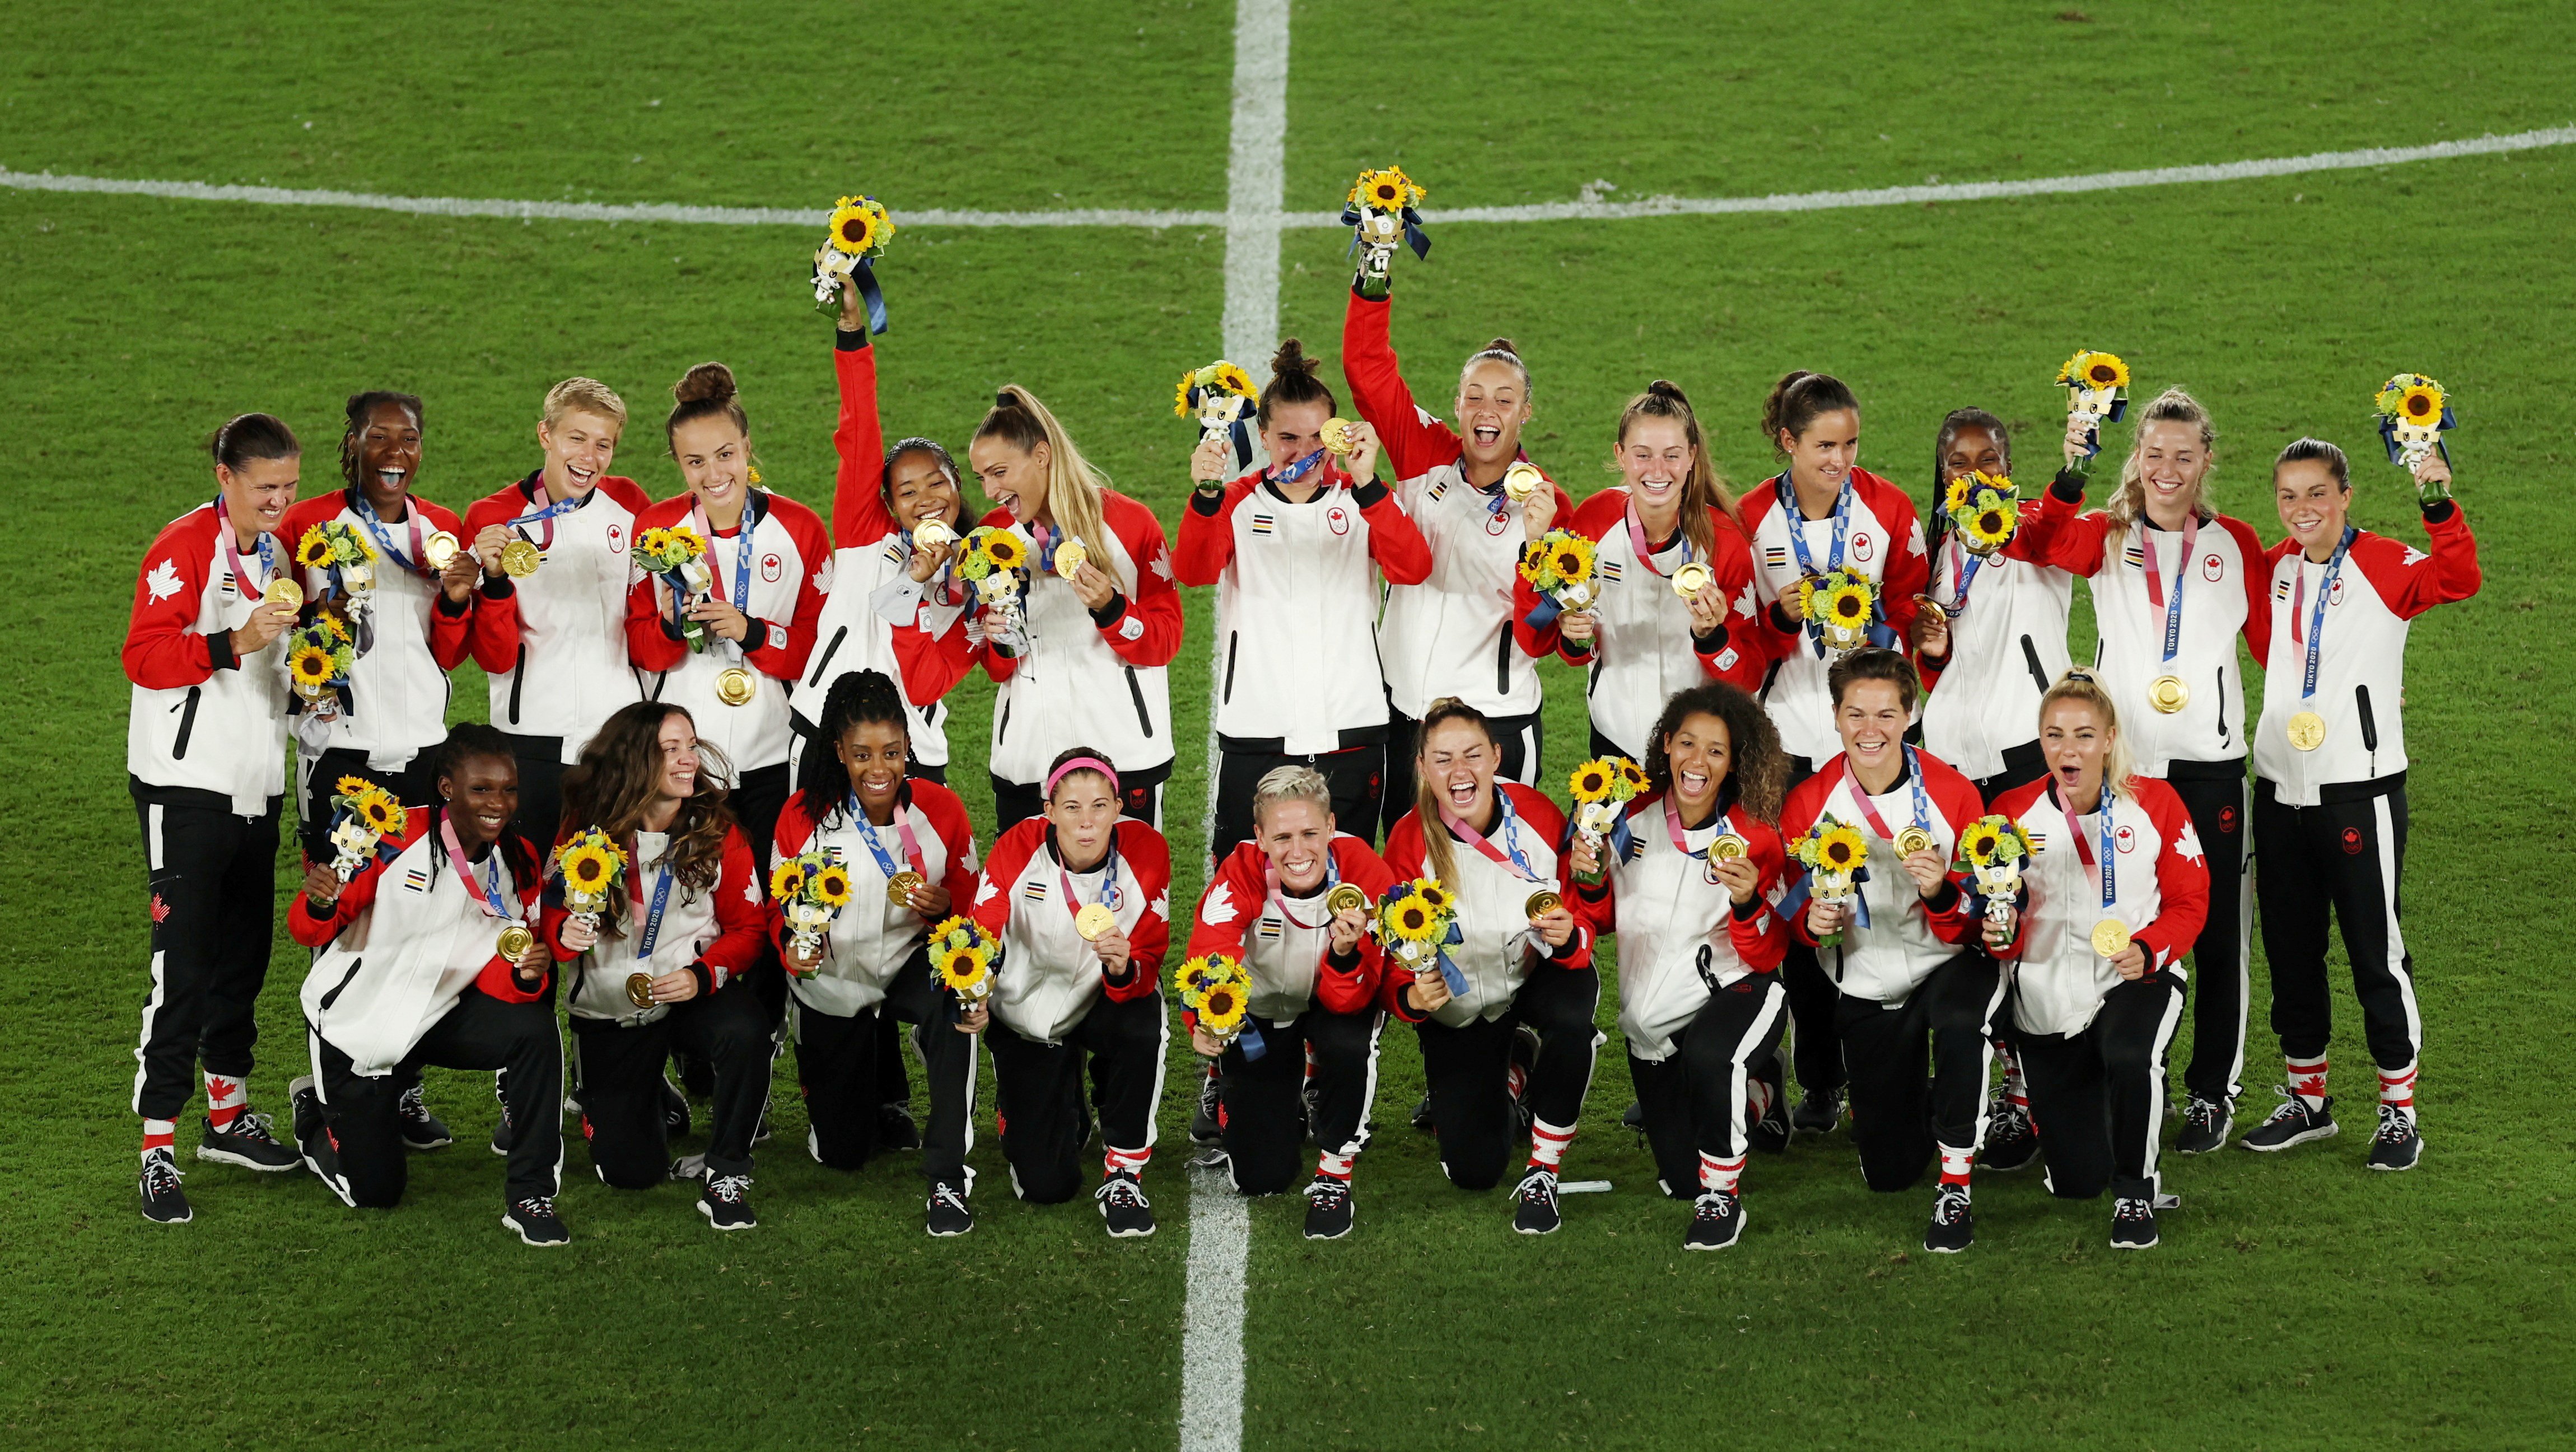 Soccer Football - Women's Team - Medal Ceremony